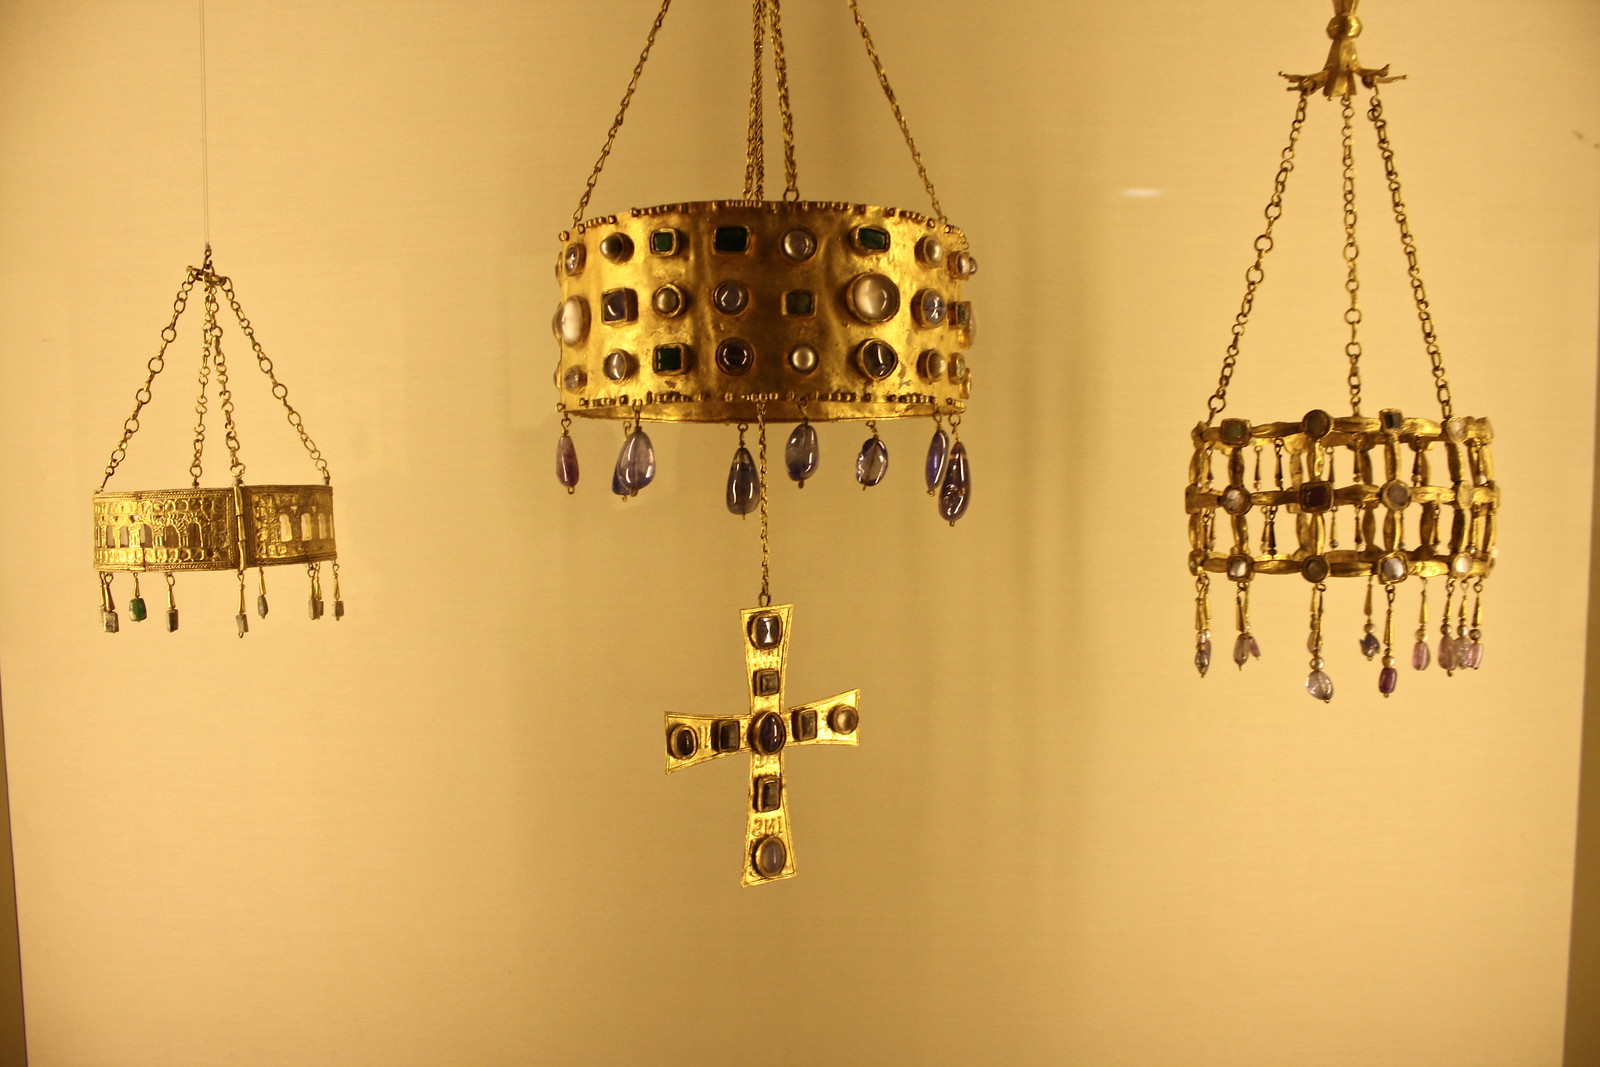 Visigothic votive crowns, Cluny Museum, Paris, France